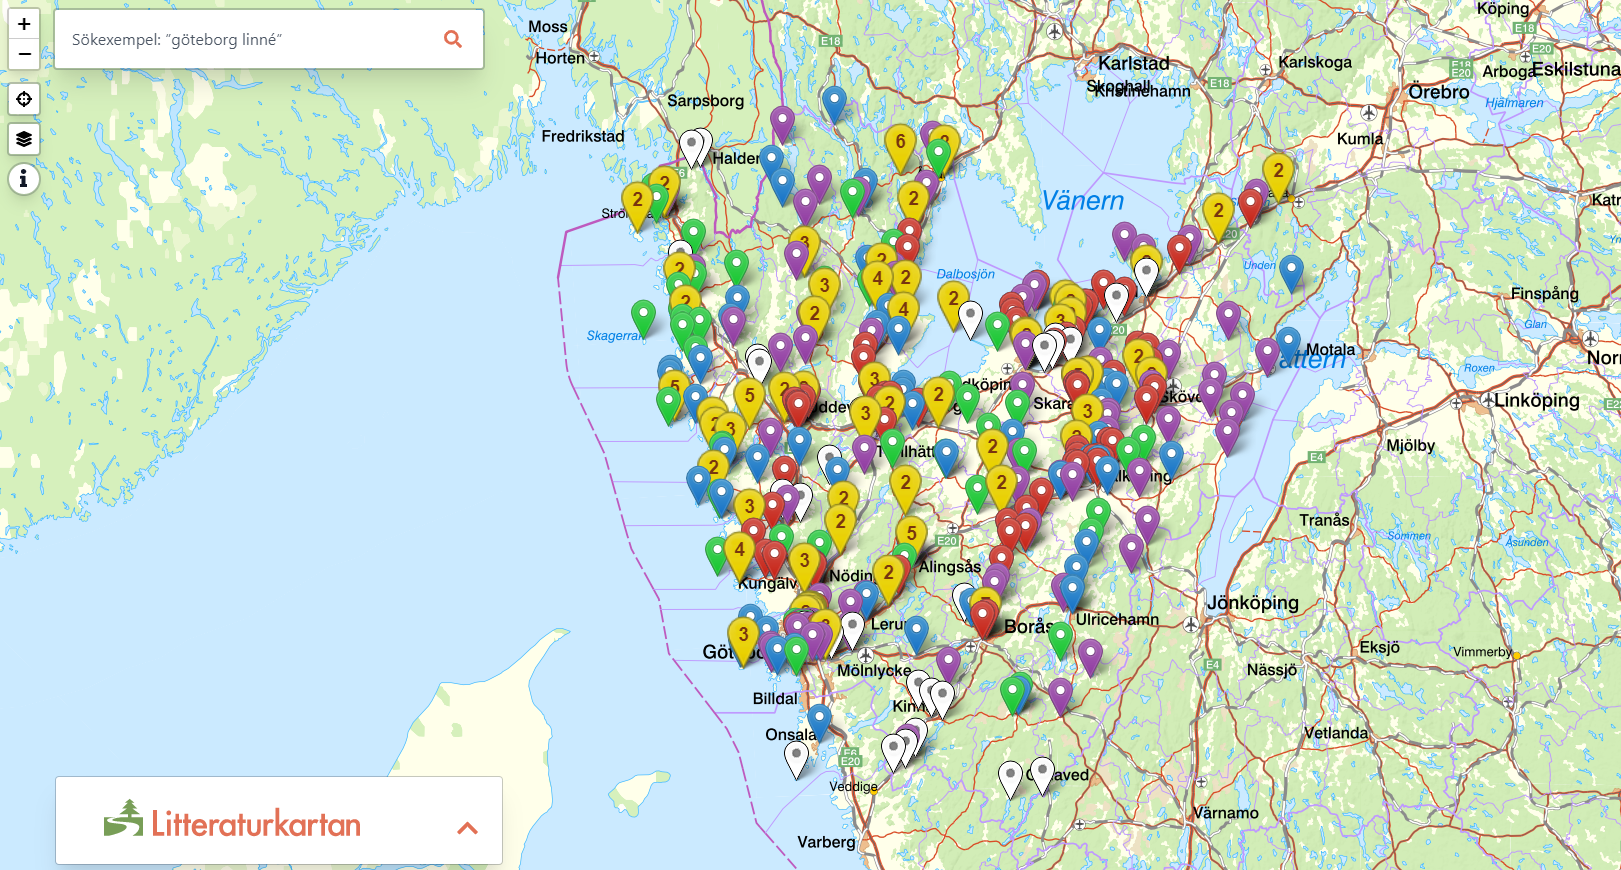 Karta över Bohuslän, Dalsland och Västergötland med en mängd olikfärgade pluppar och en sökruta.